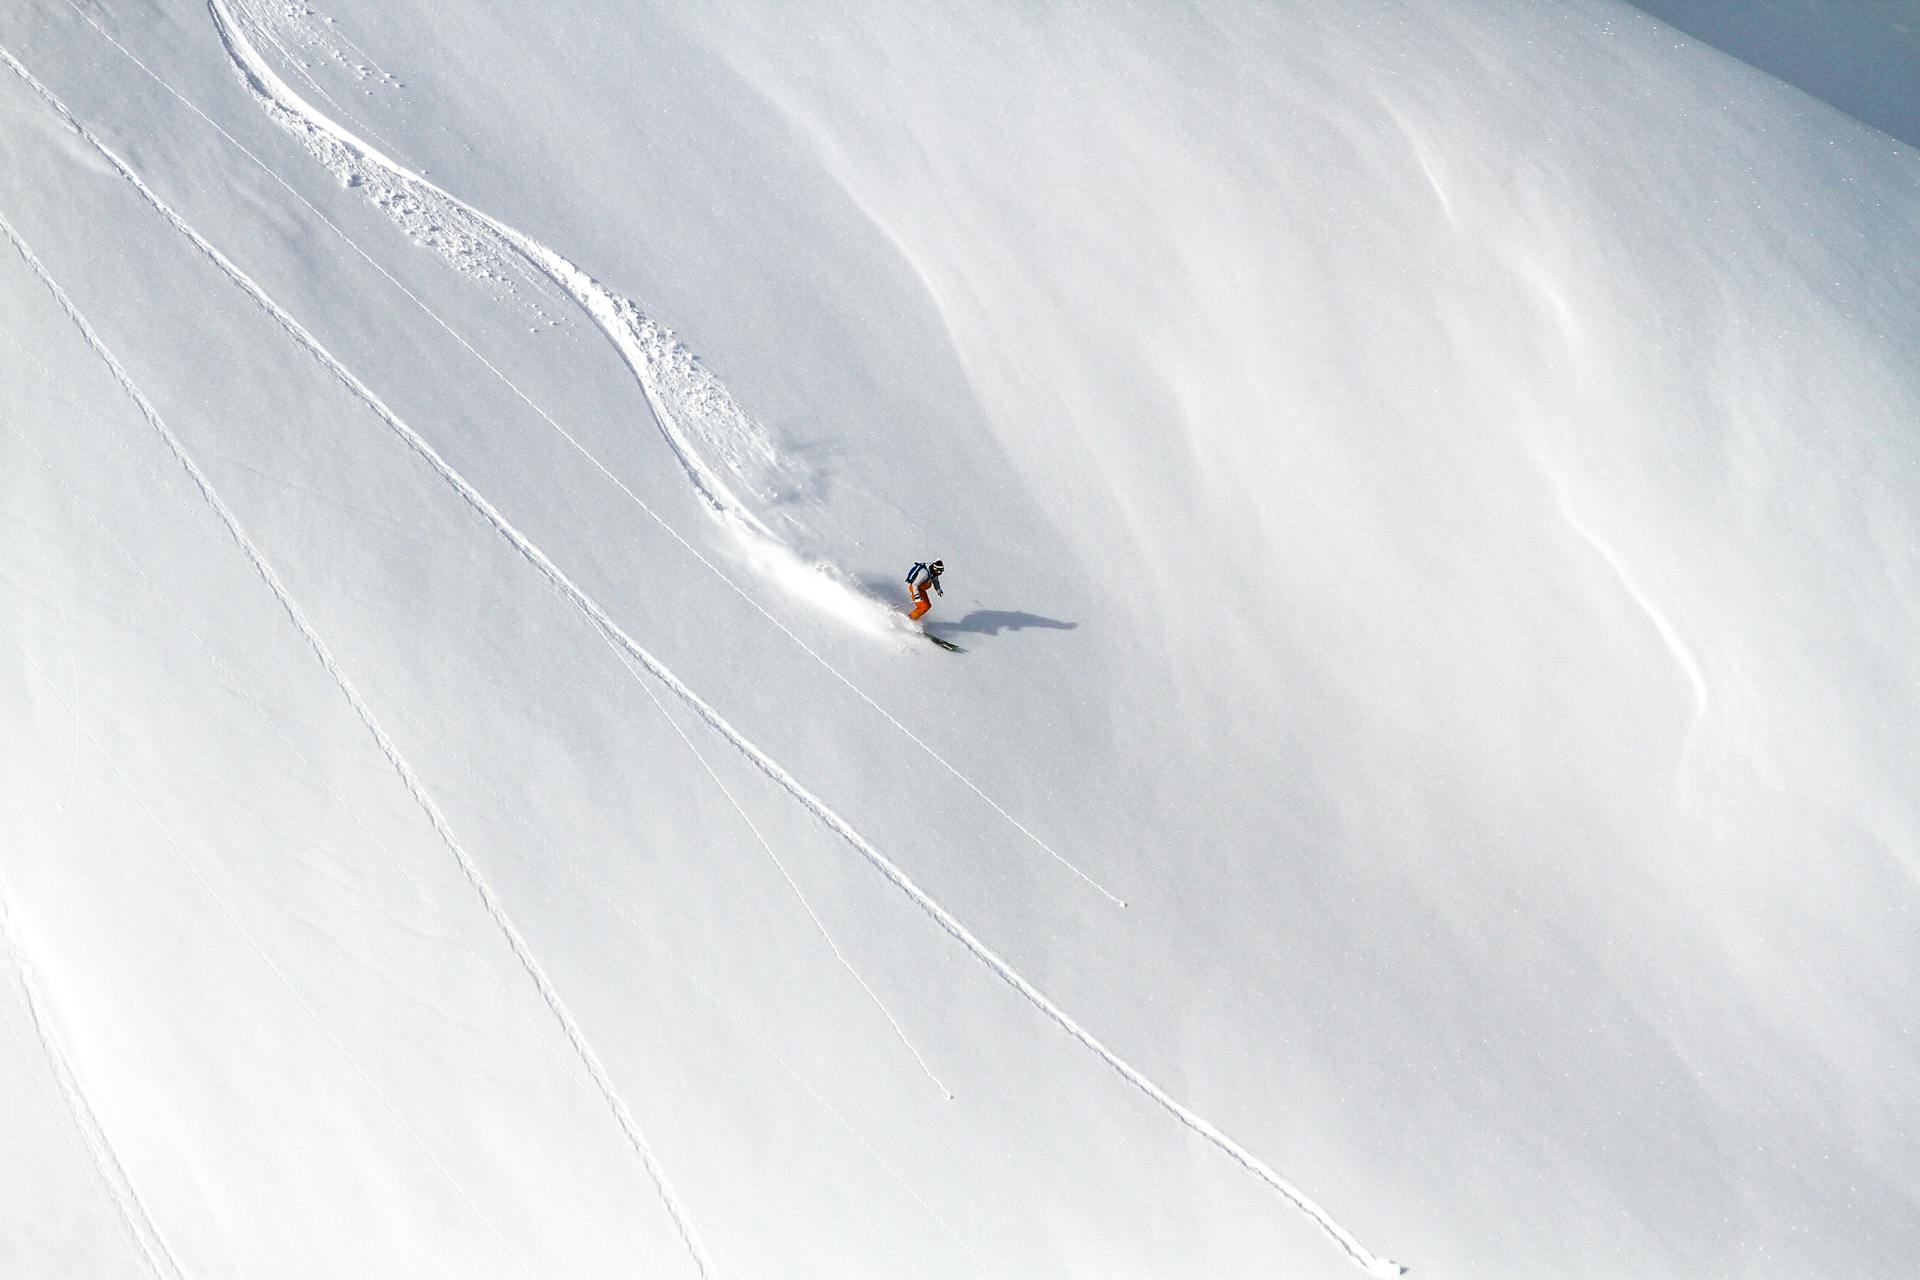 Skier skiing down off-piste mountain